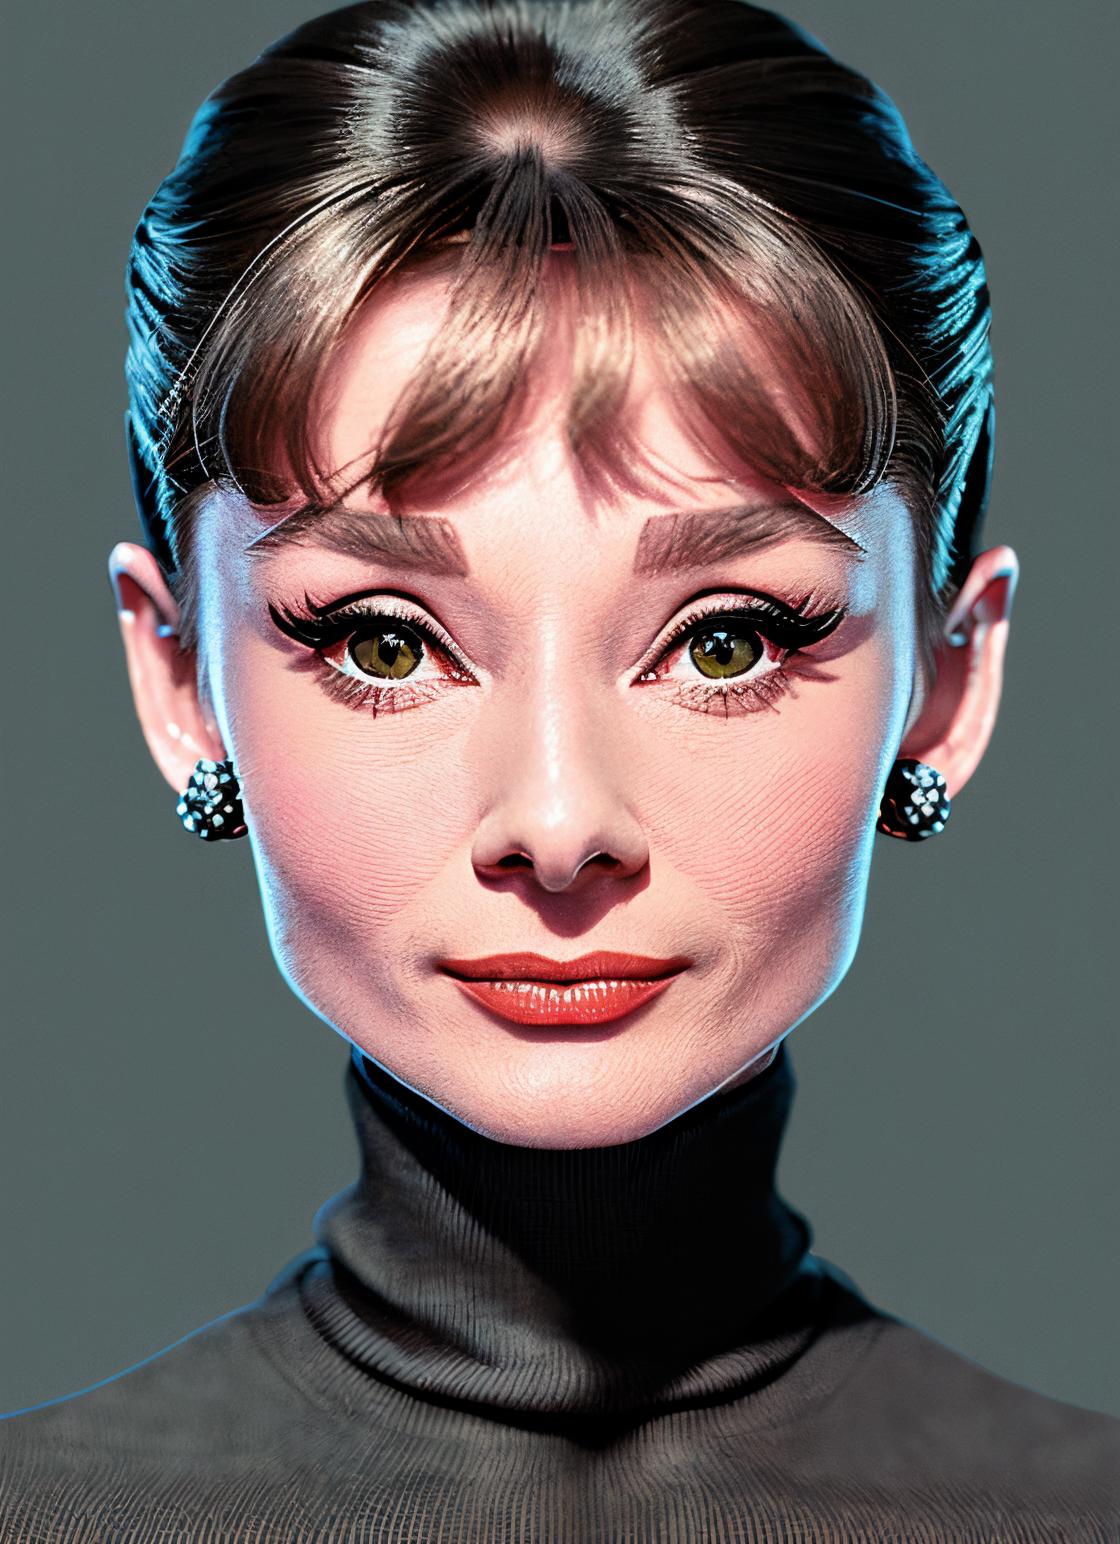 Audrey Hepburn image by astragartist